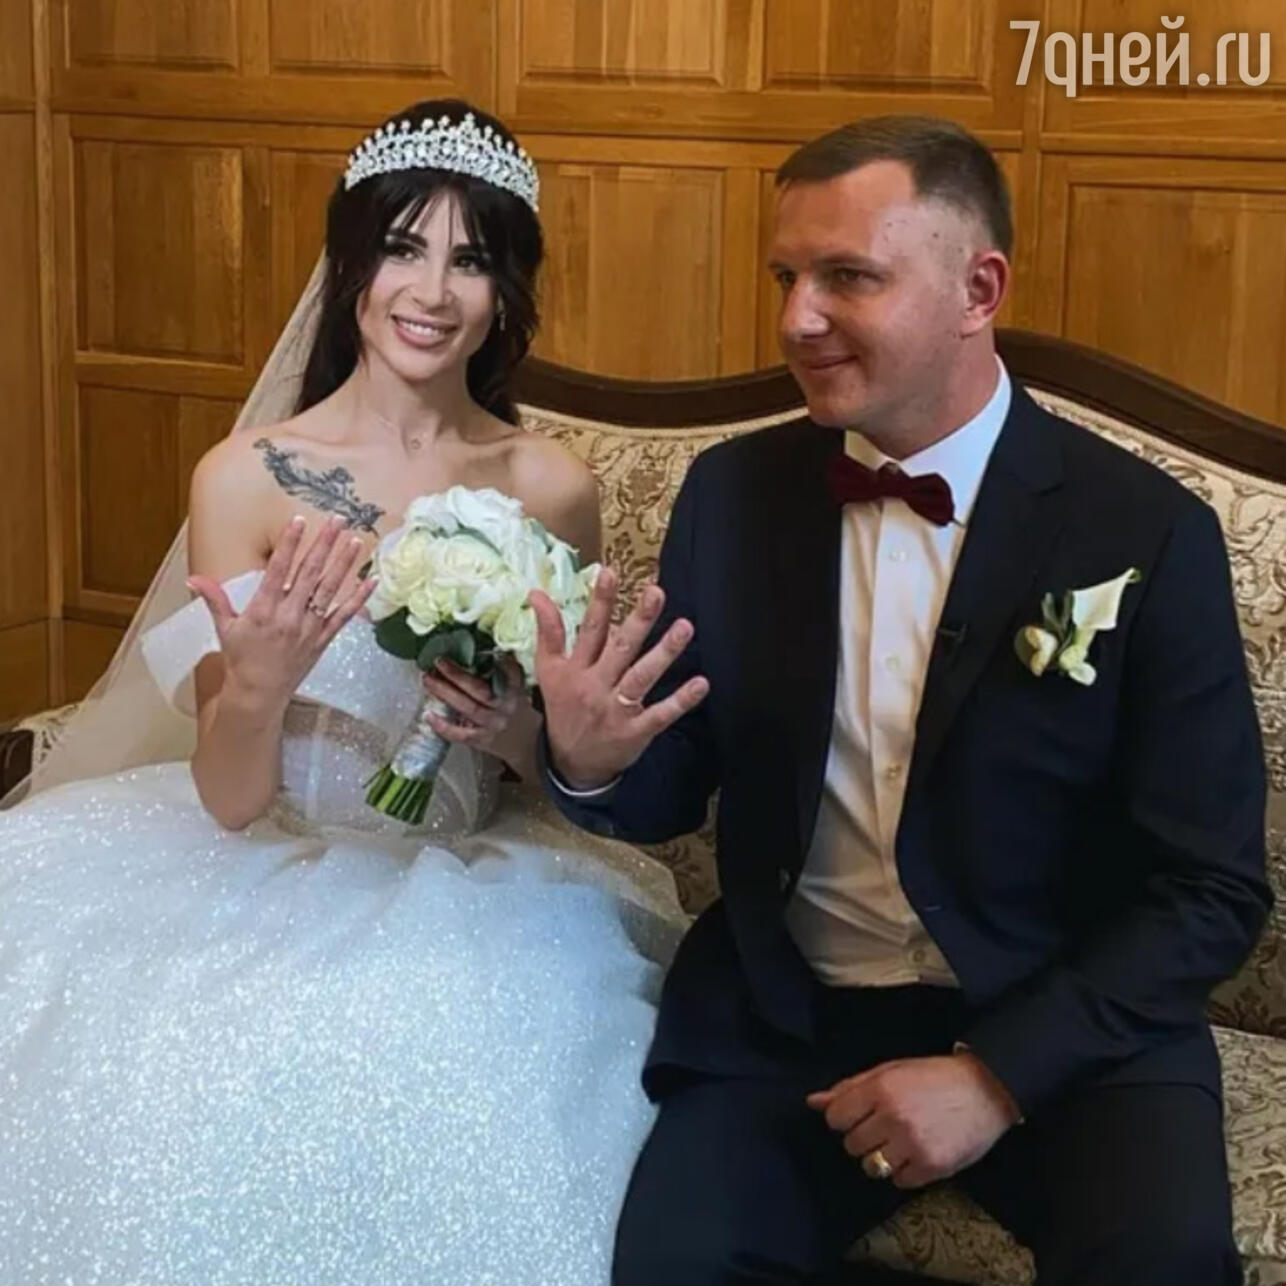 Илья Яббаров и Анастасия Голд свадьба